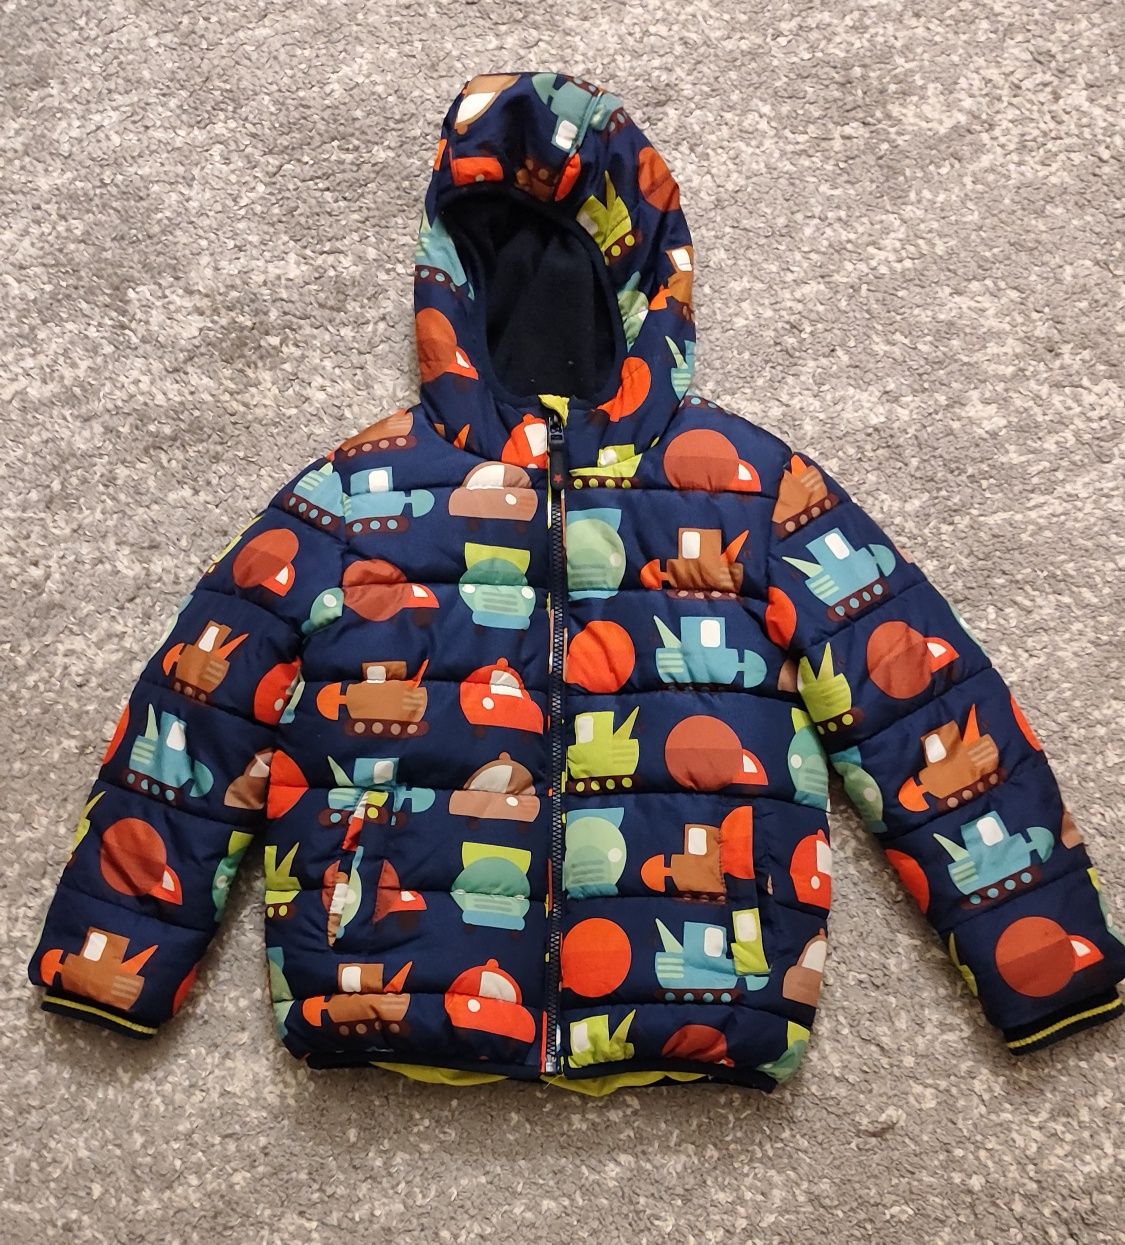 Зимова куртка на хлопчика 4-6 років